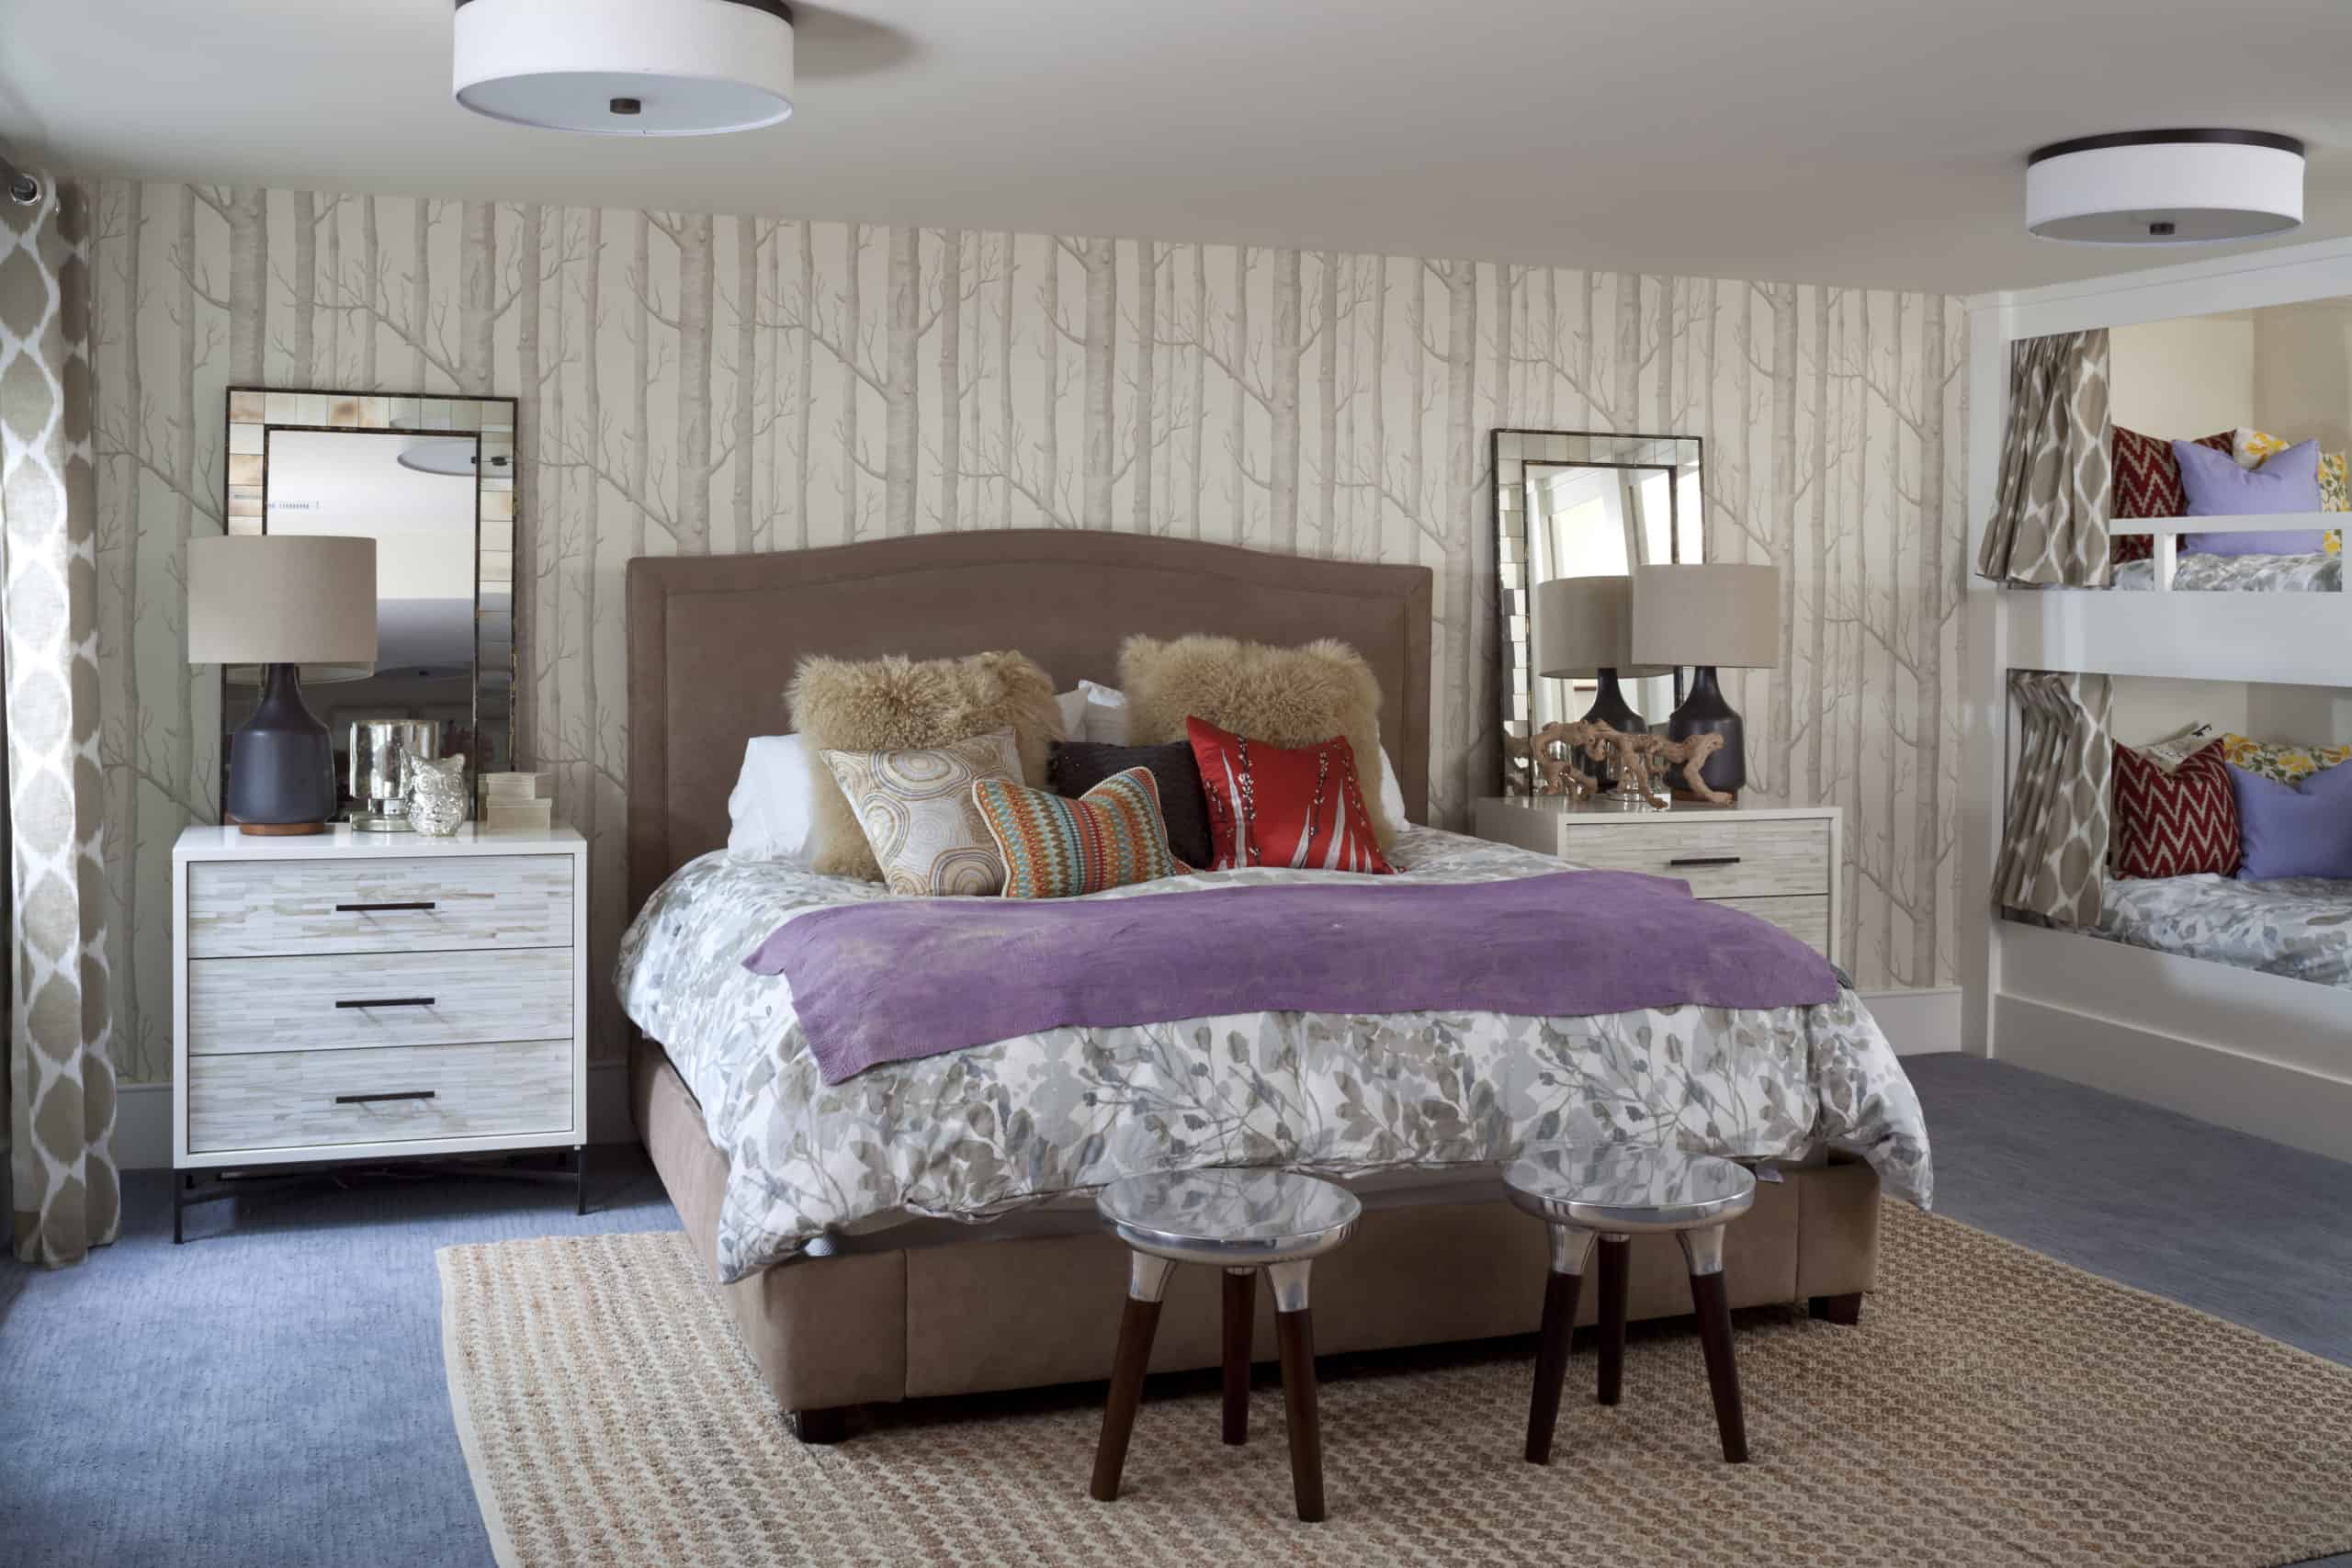 Designer guest bedroom with queen bed and built-in bunk beds